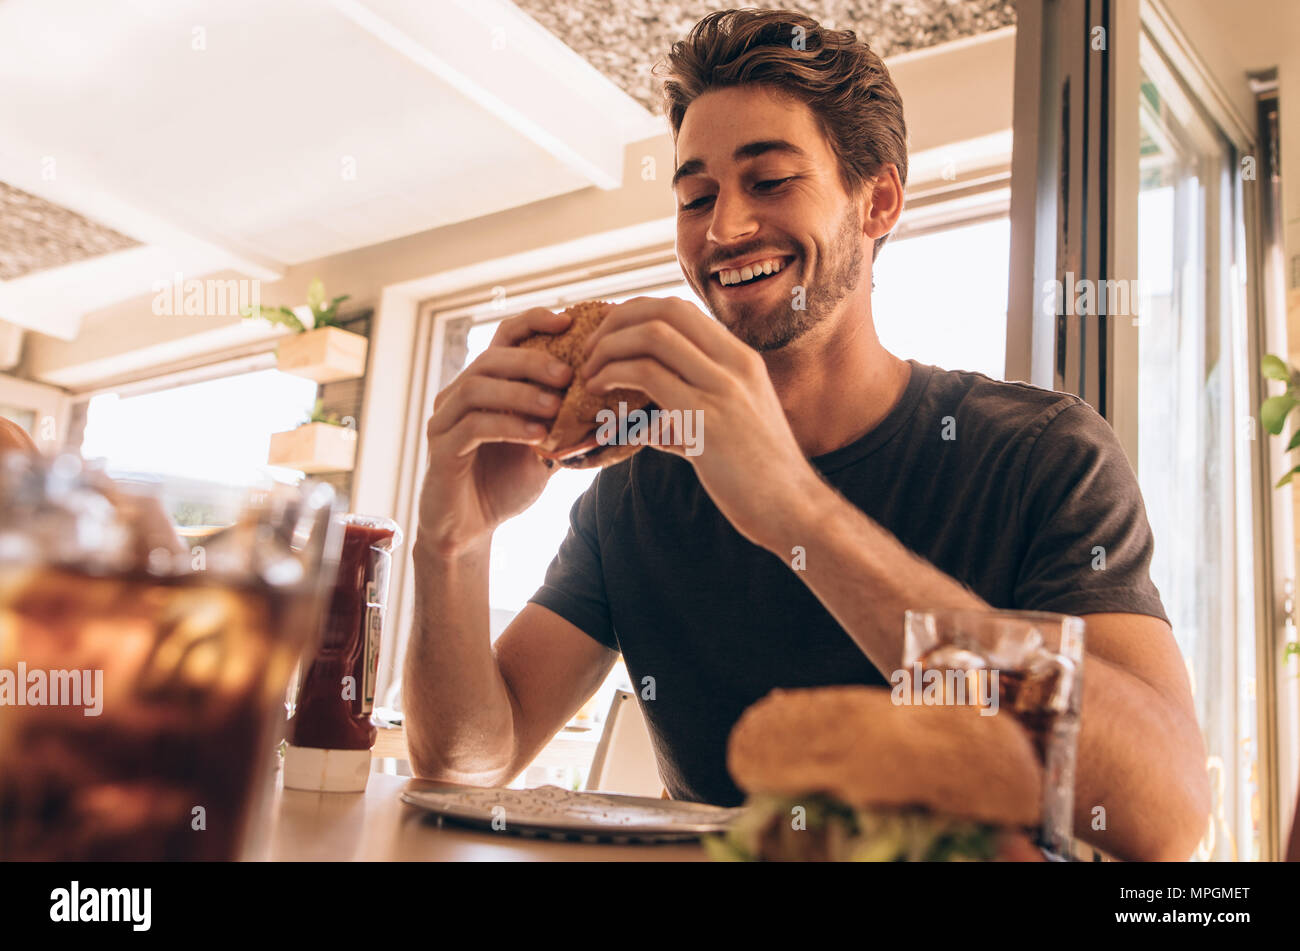 Glückliche junge Mann essen eine leckere Burger im Restaurant. Hungrigen jungen Kerl in Burger an fast food Cafe gestapelt. Stockfoto